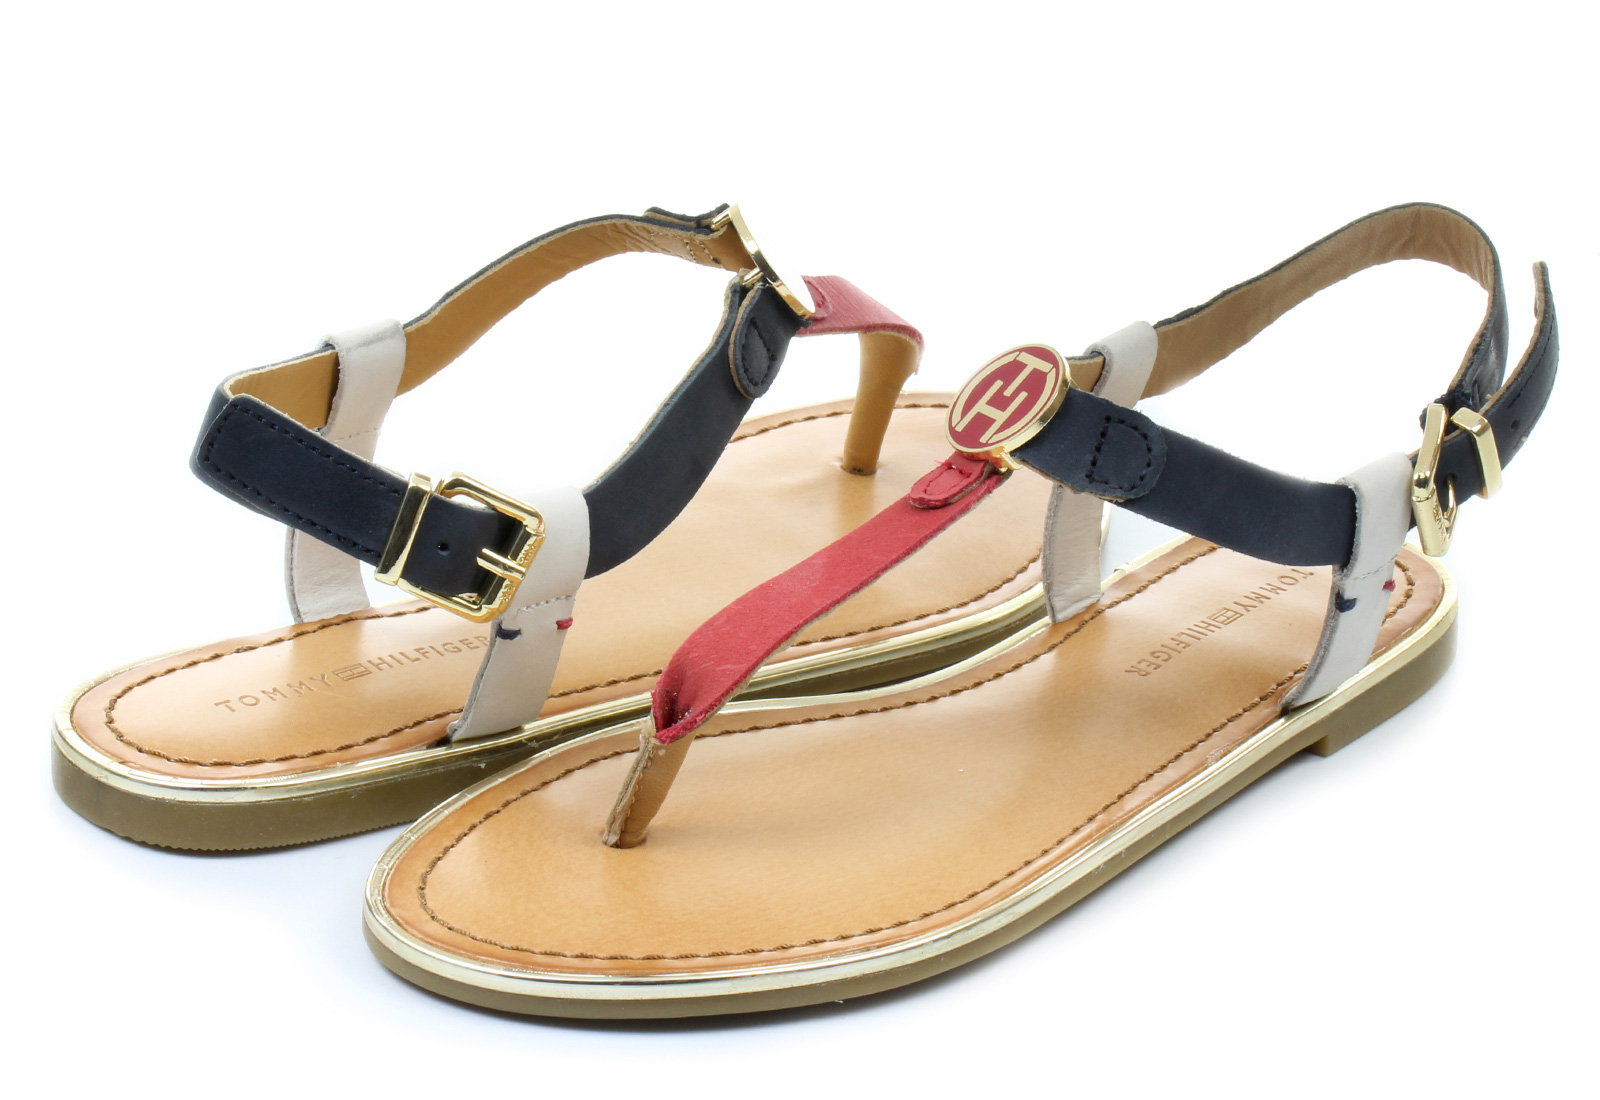 Tommy Hilfiger Sandals - Julia 26a - 15S-8685-910 - Online shop for ...